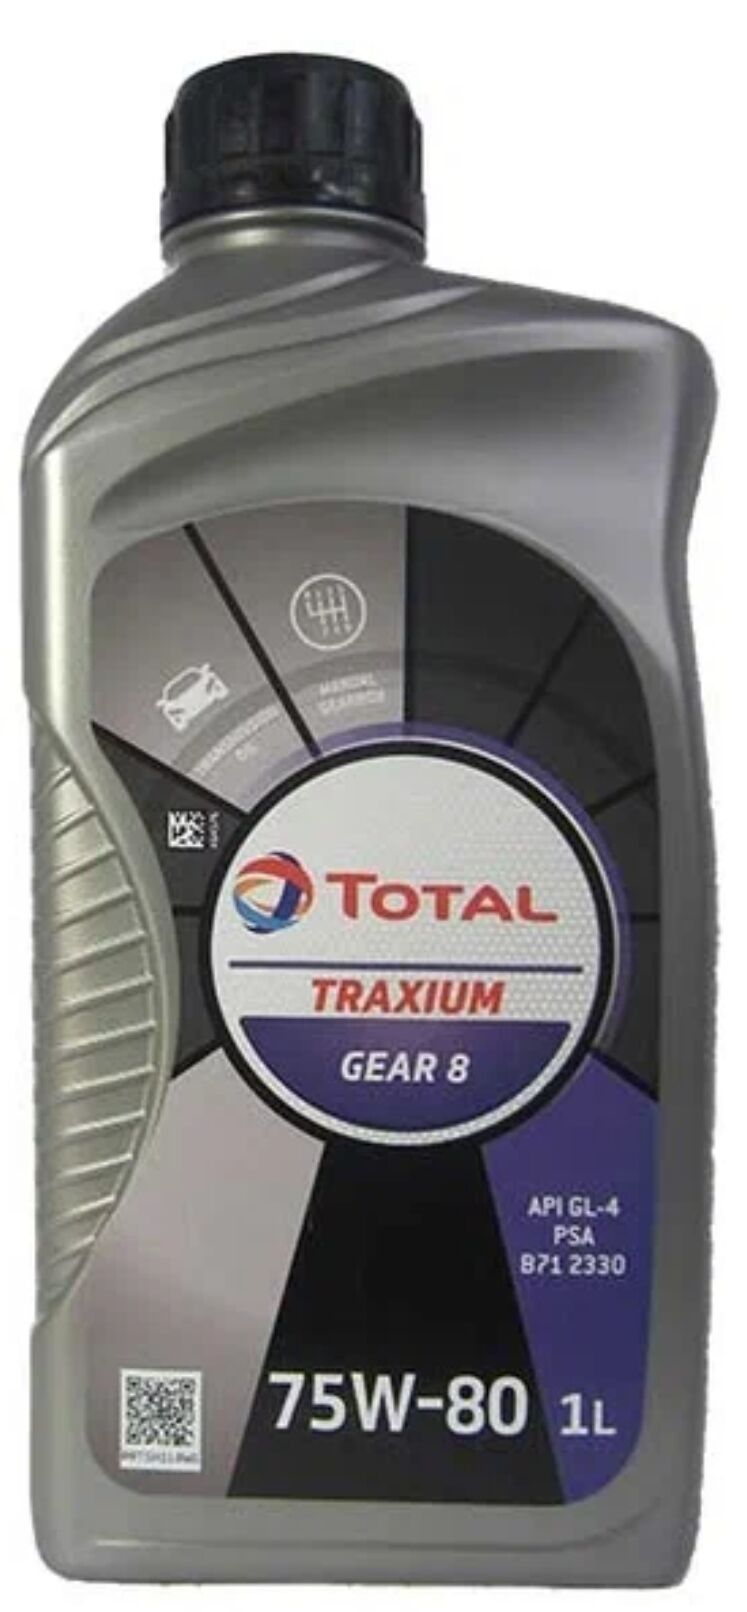 Масло трансмиссионное TOTAL Traxium Gear 8 75W80 (1л.)